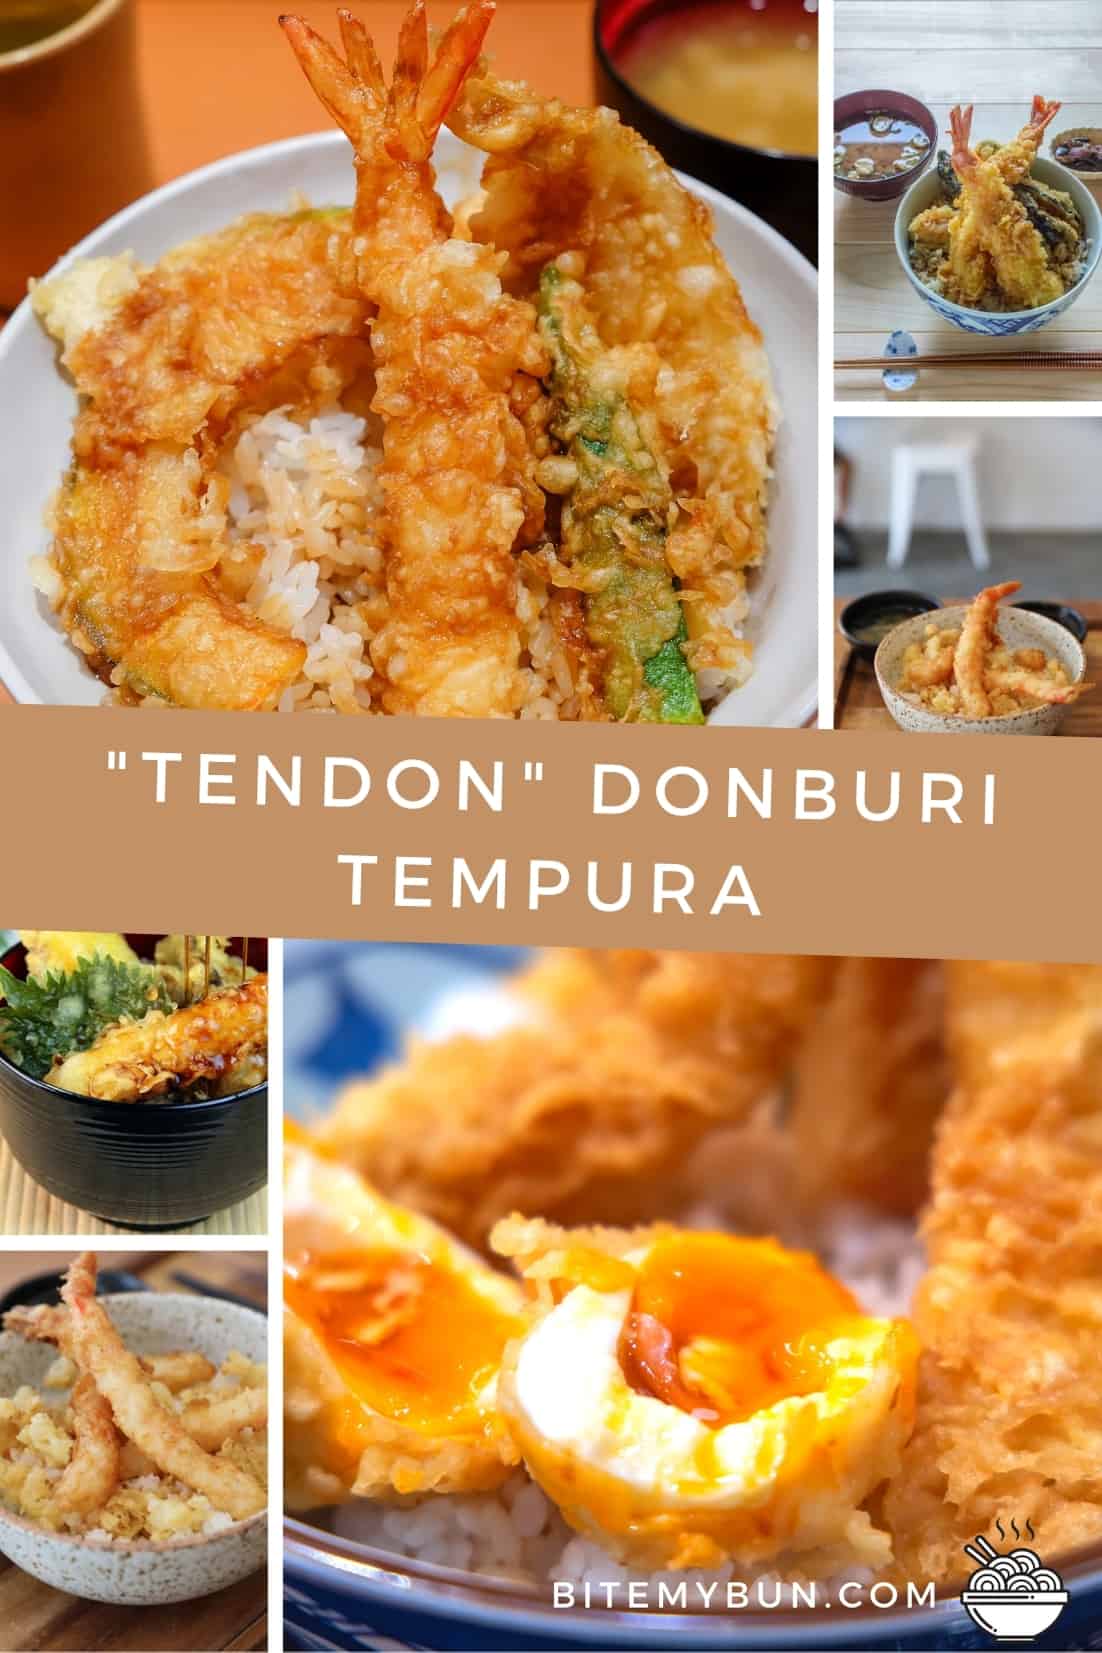 Tendon tempura bakuli za kamba